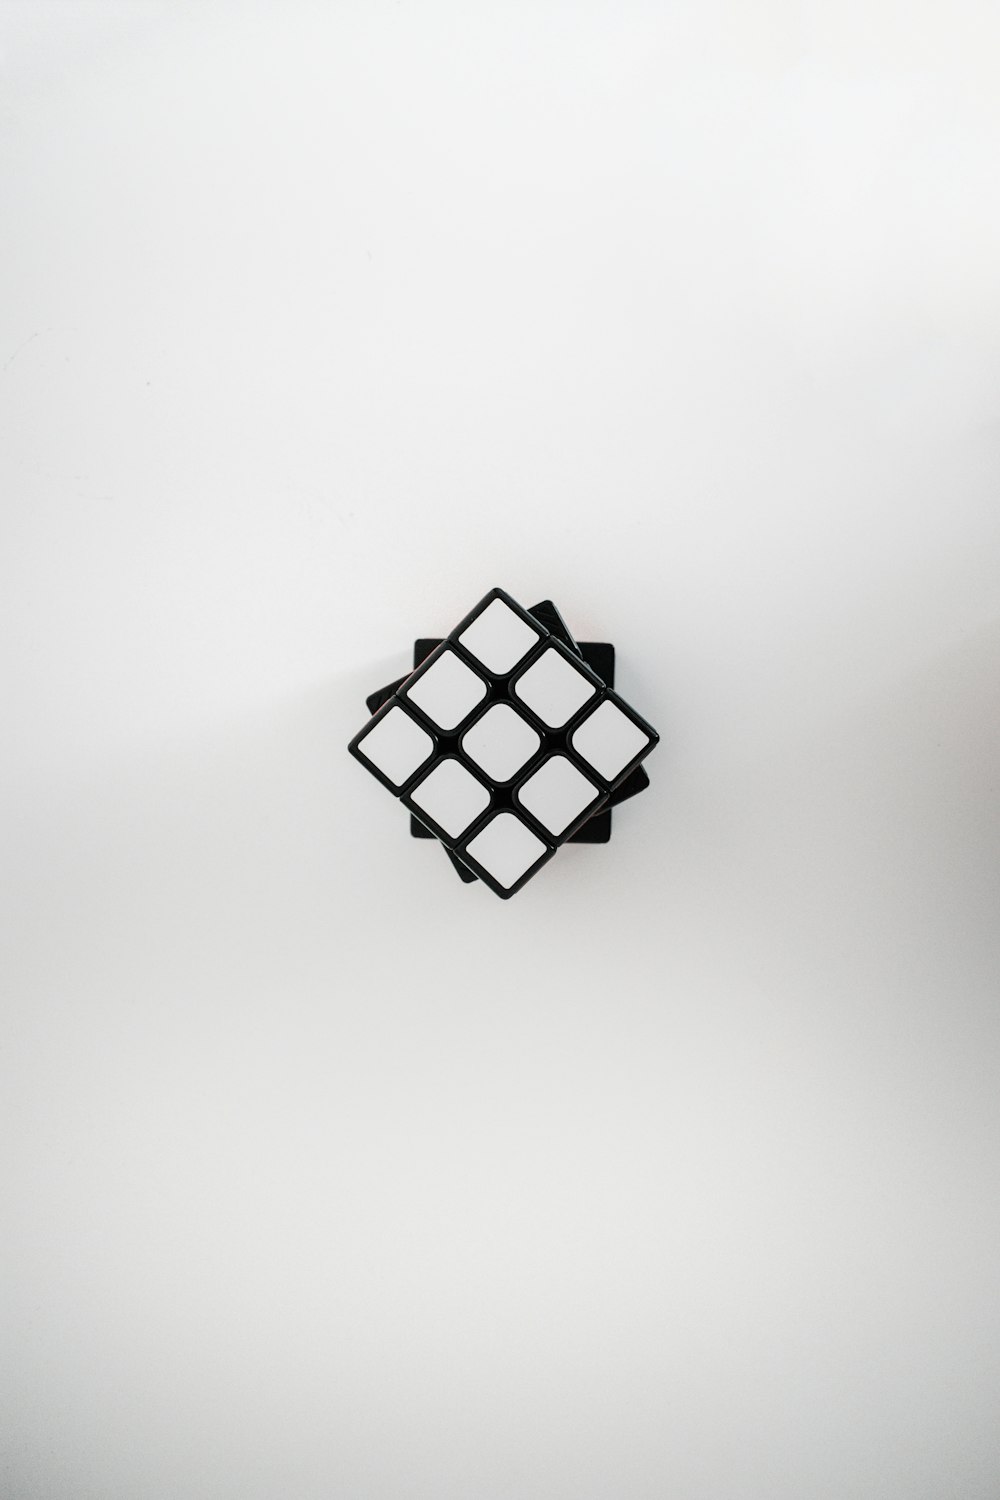 白と黒の市松模様の正方形